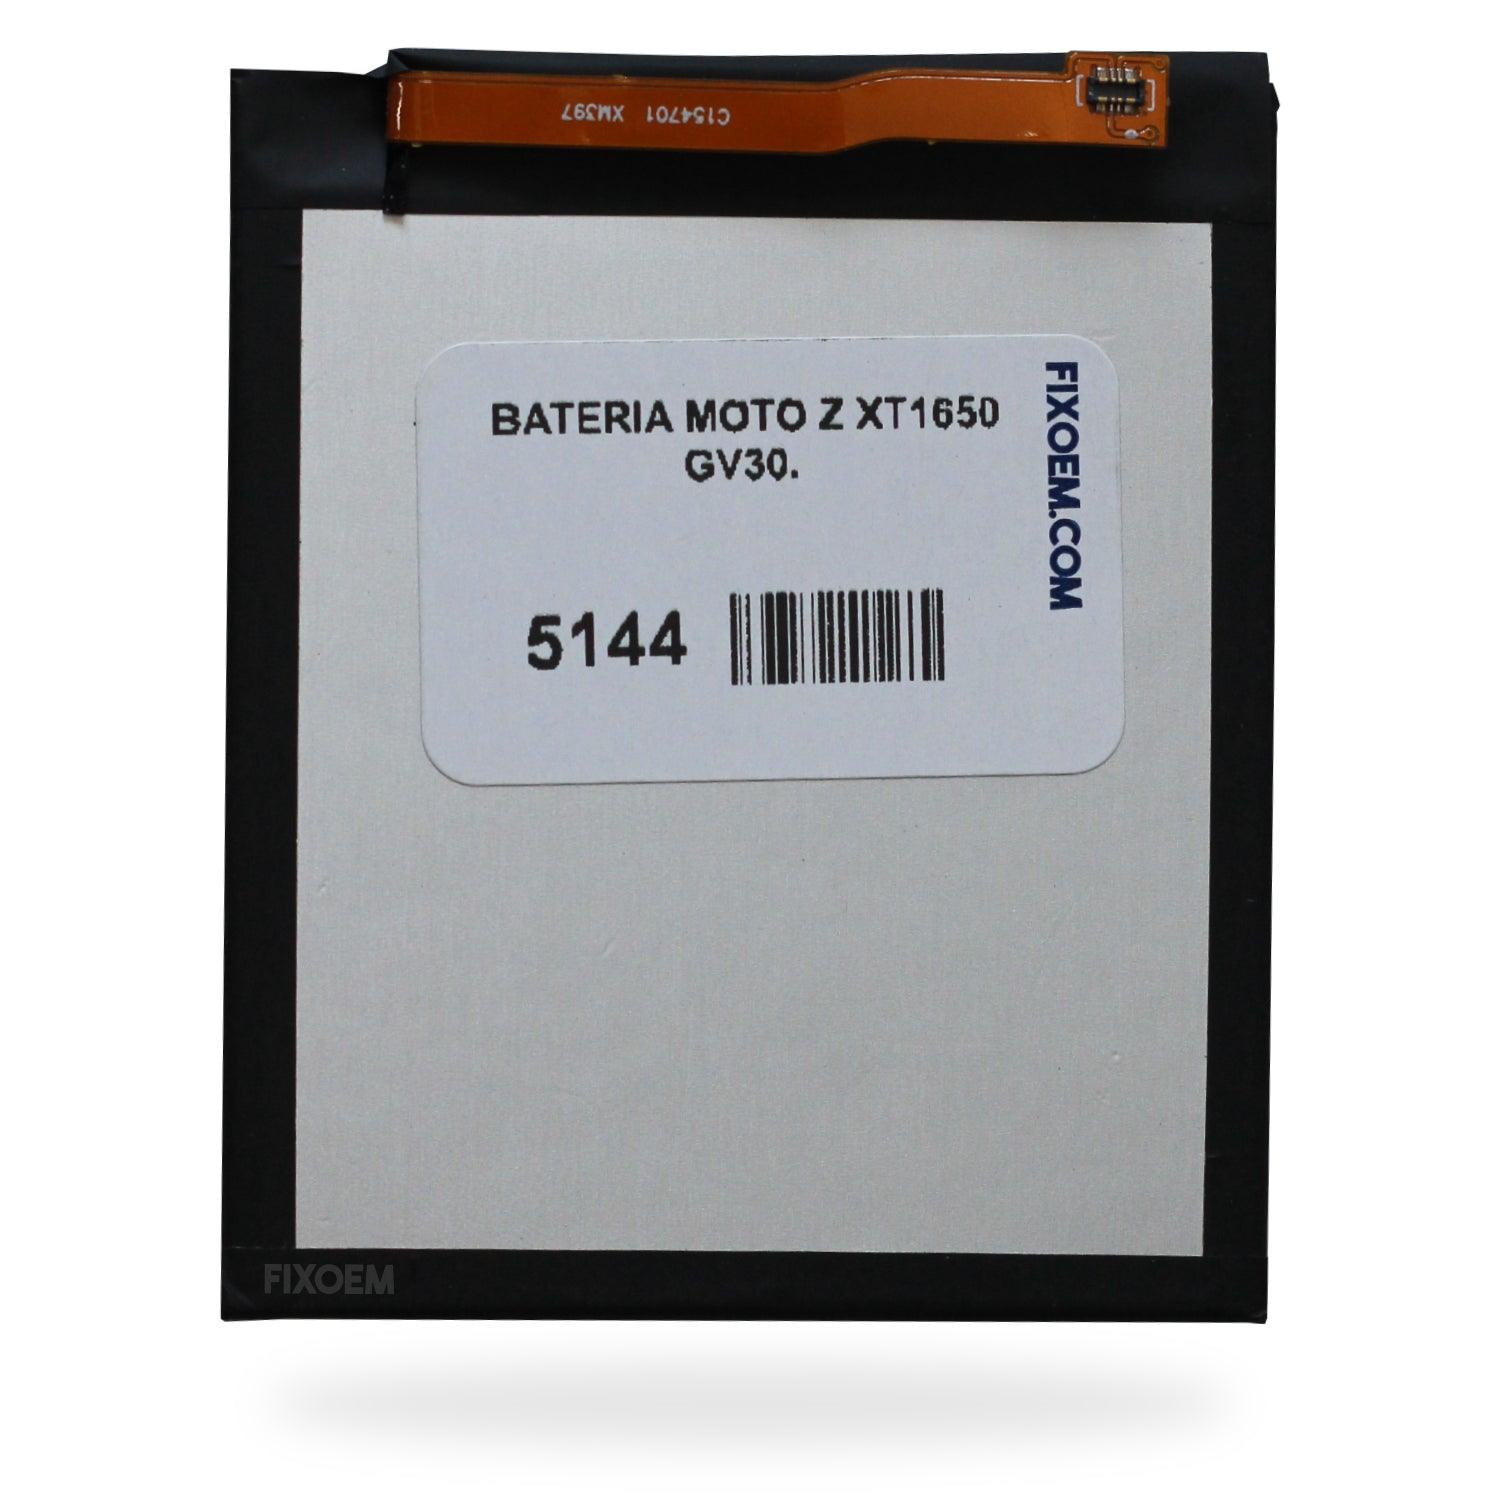 Bateria Moto Z Xt1650 Gv30. a solo $ 130.00 Refaccion y puestos celulares, refurbish y microelectronica.- FixOEM